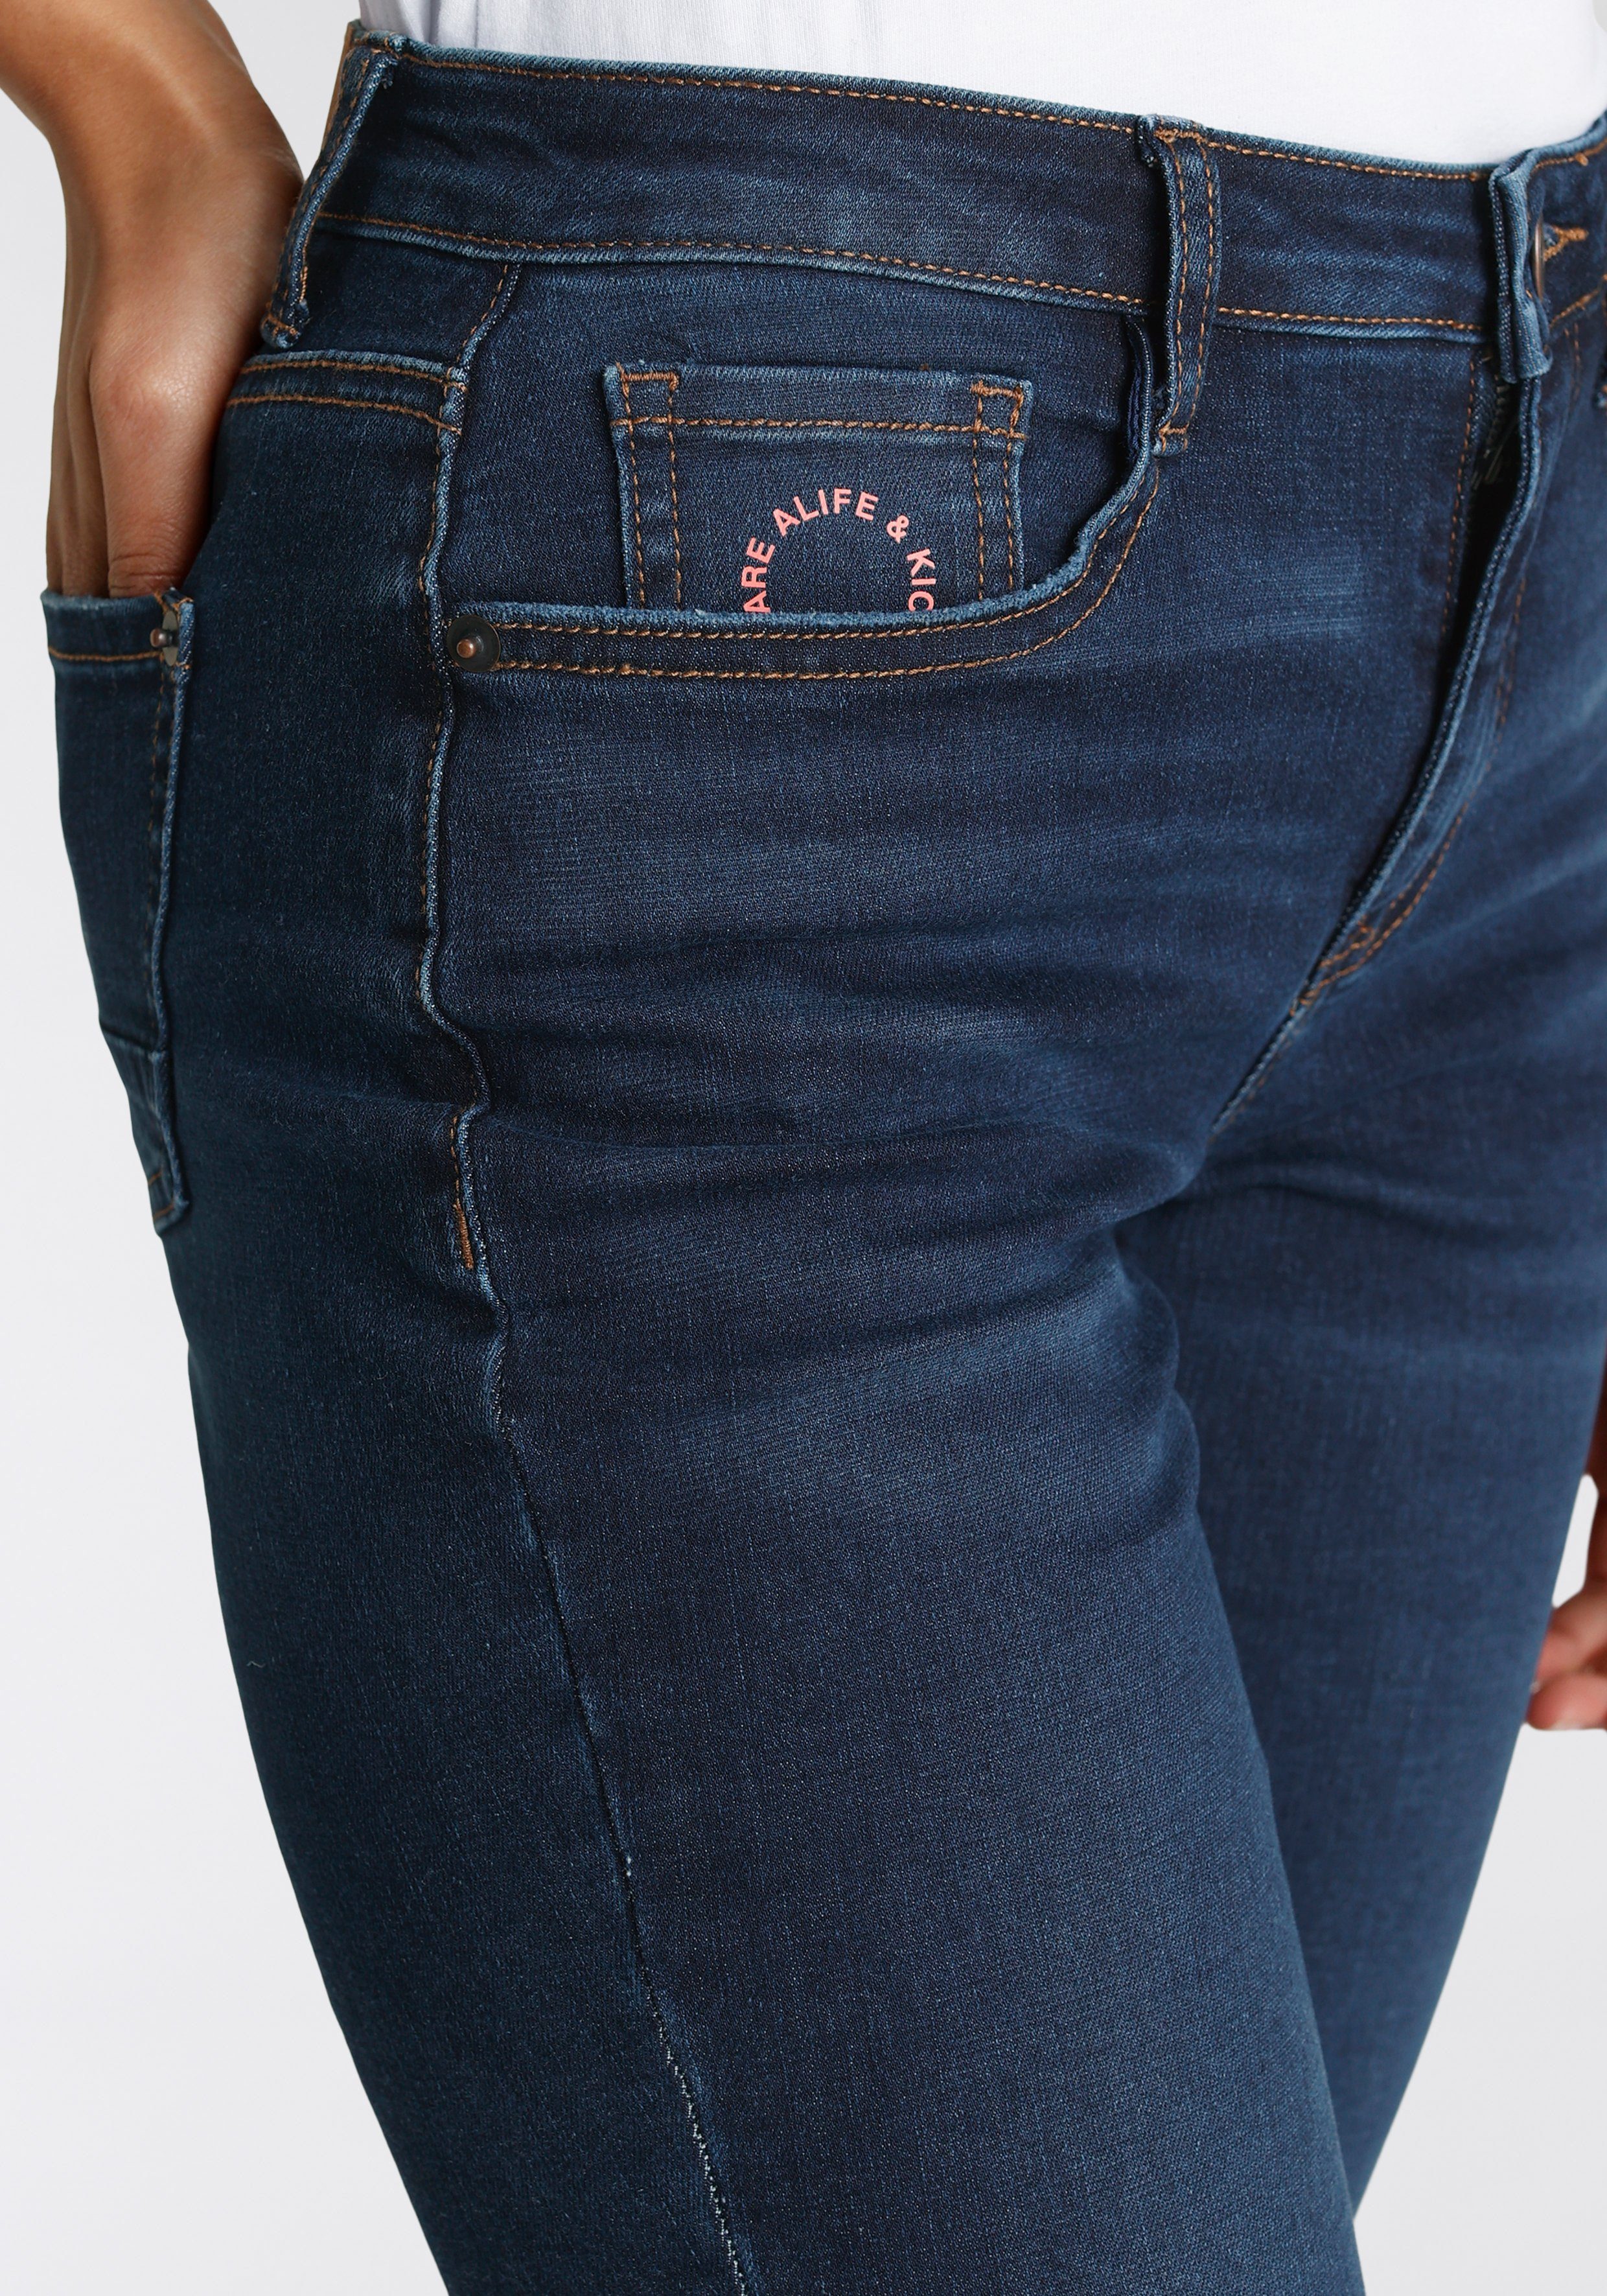 NEUE High-waist-Jeans NolaAK blue Kickin Alife used & Slim-Fit KOLLEKTION dark